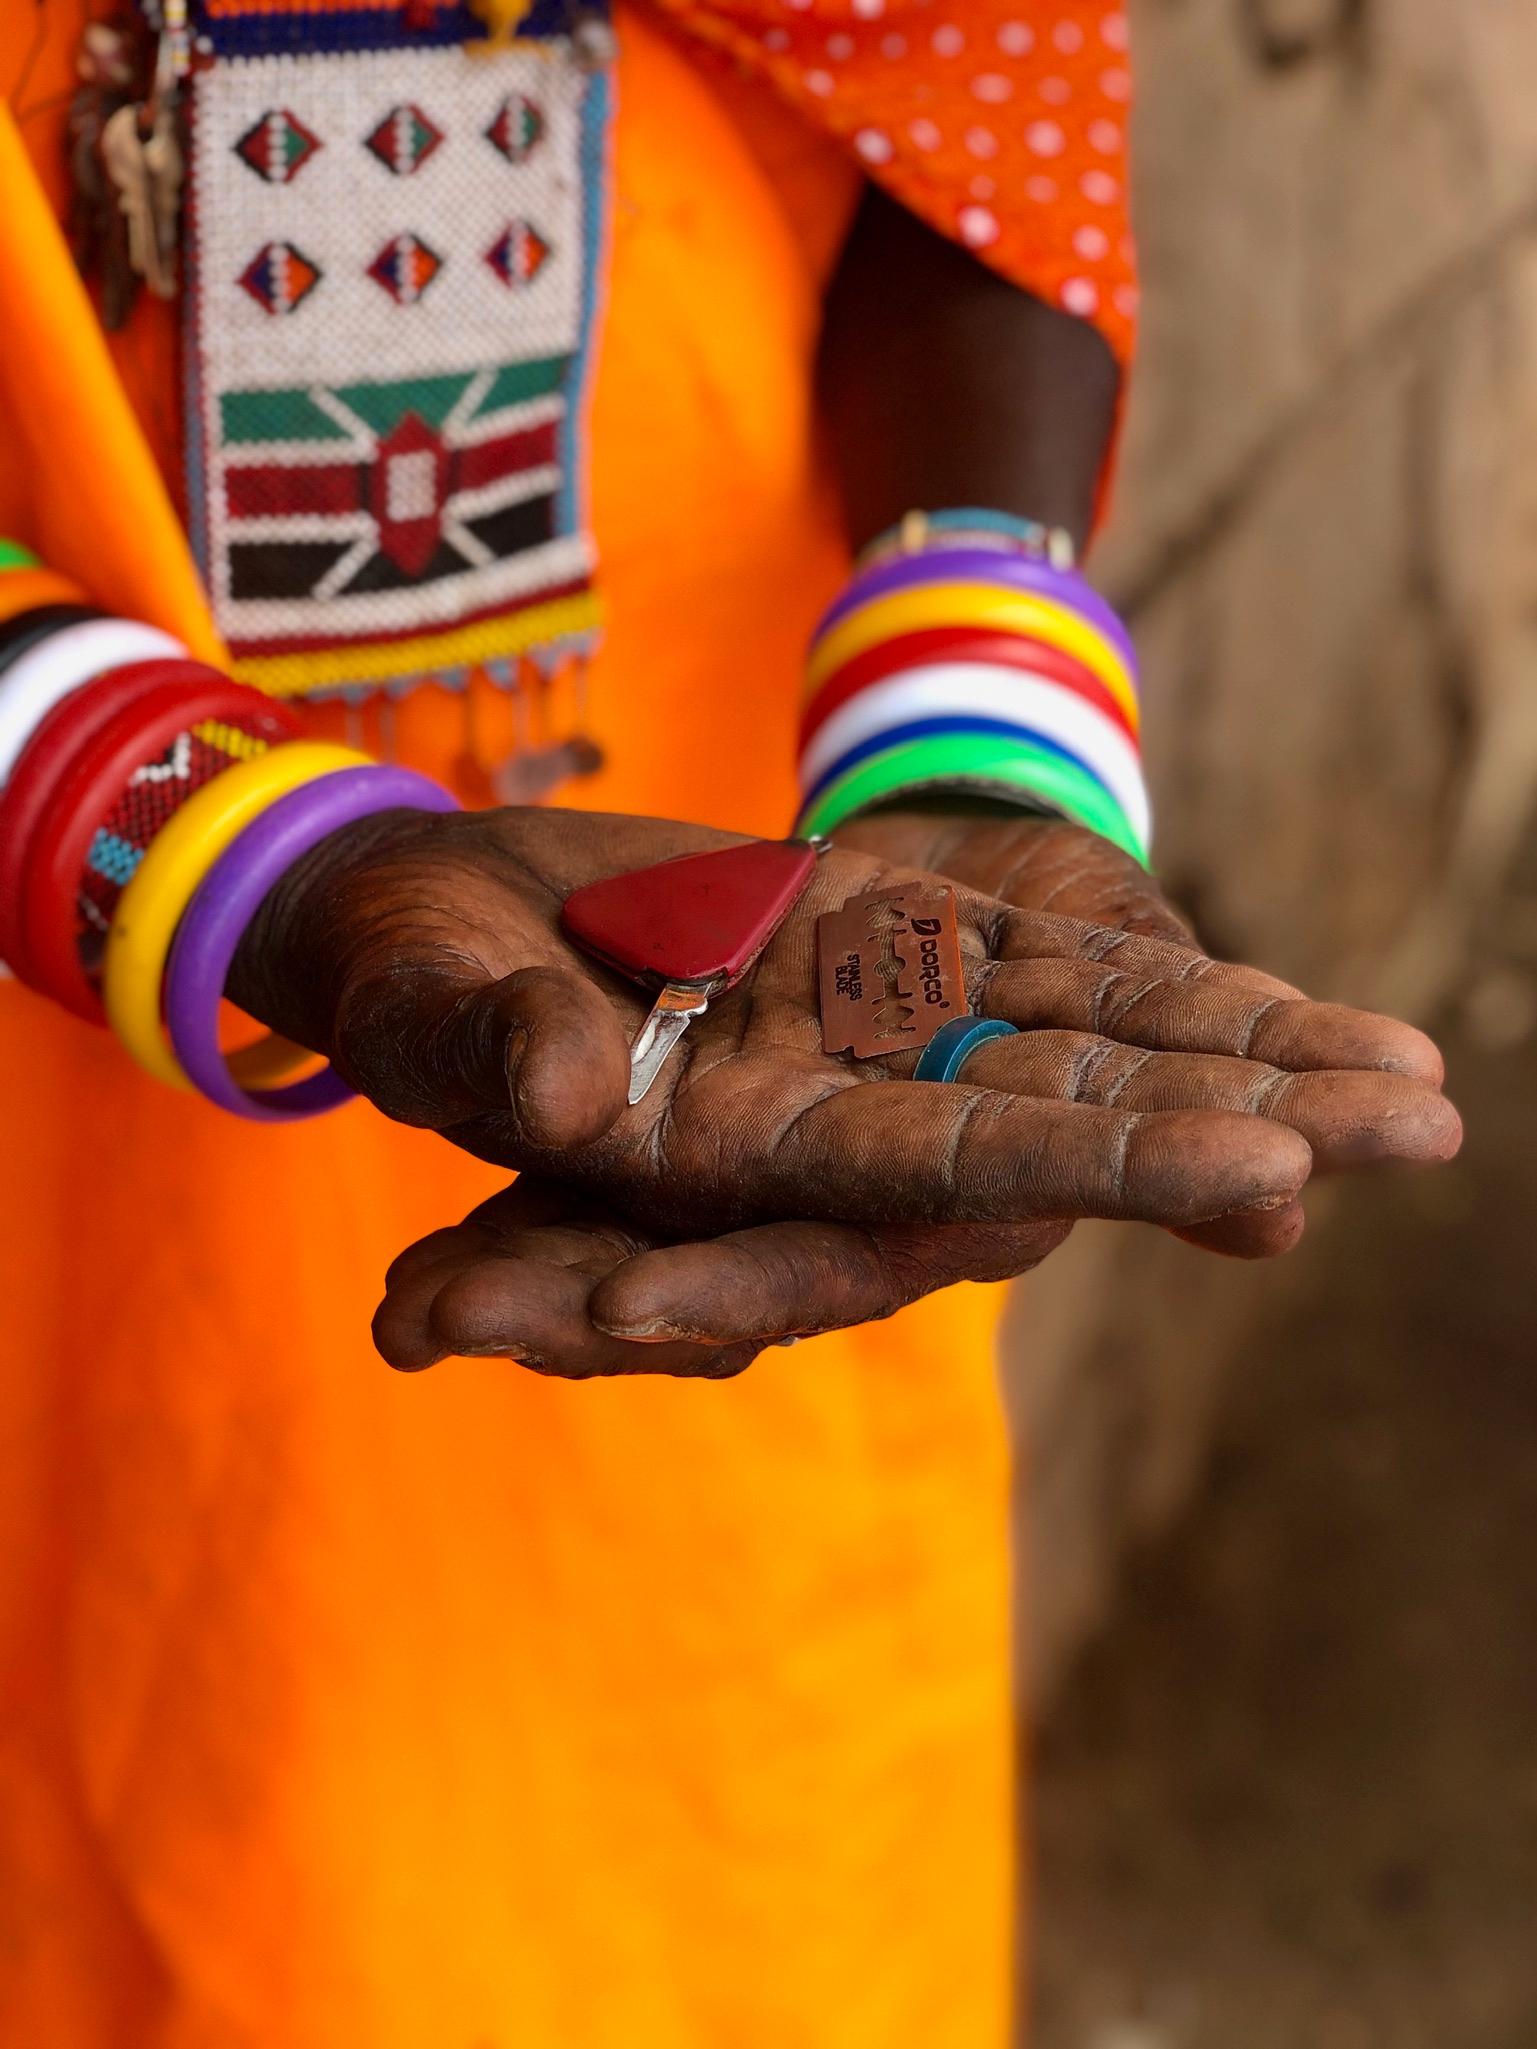 Könsstympningarna utförs oftast med redskap från hushållet och utan någon som helst bedövning. Här en fickkniv och ett rakblad som använts vid ingreppet.